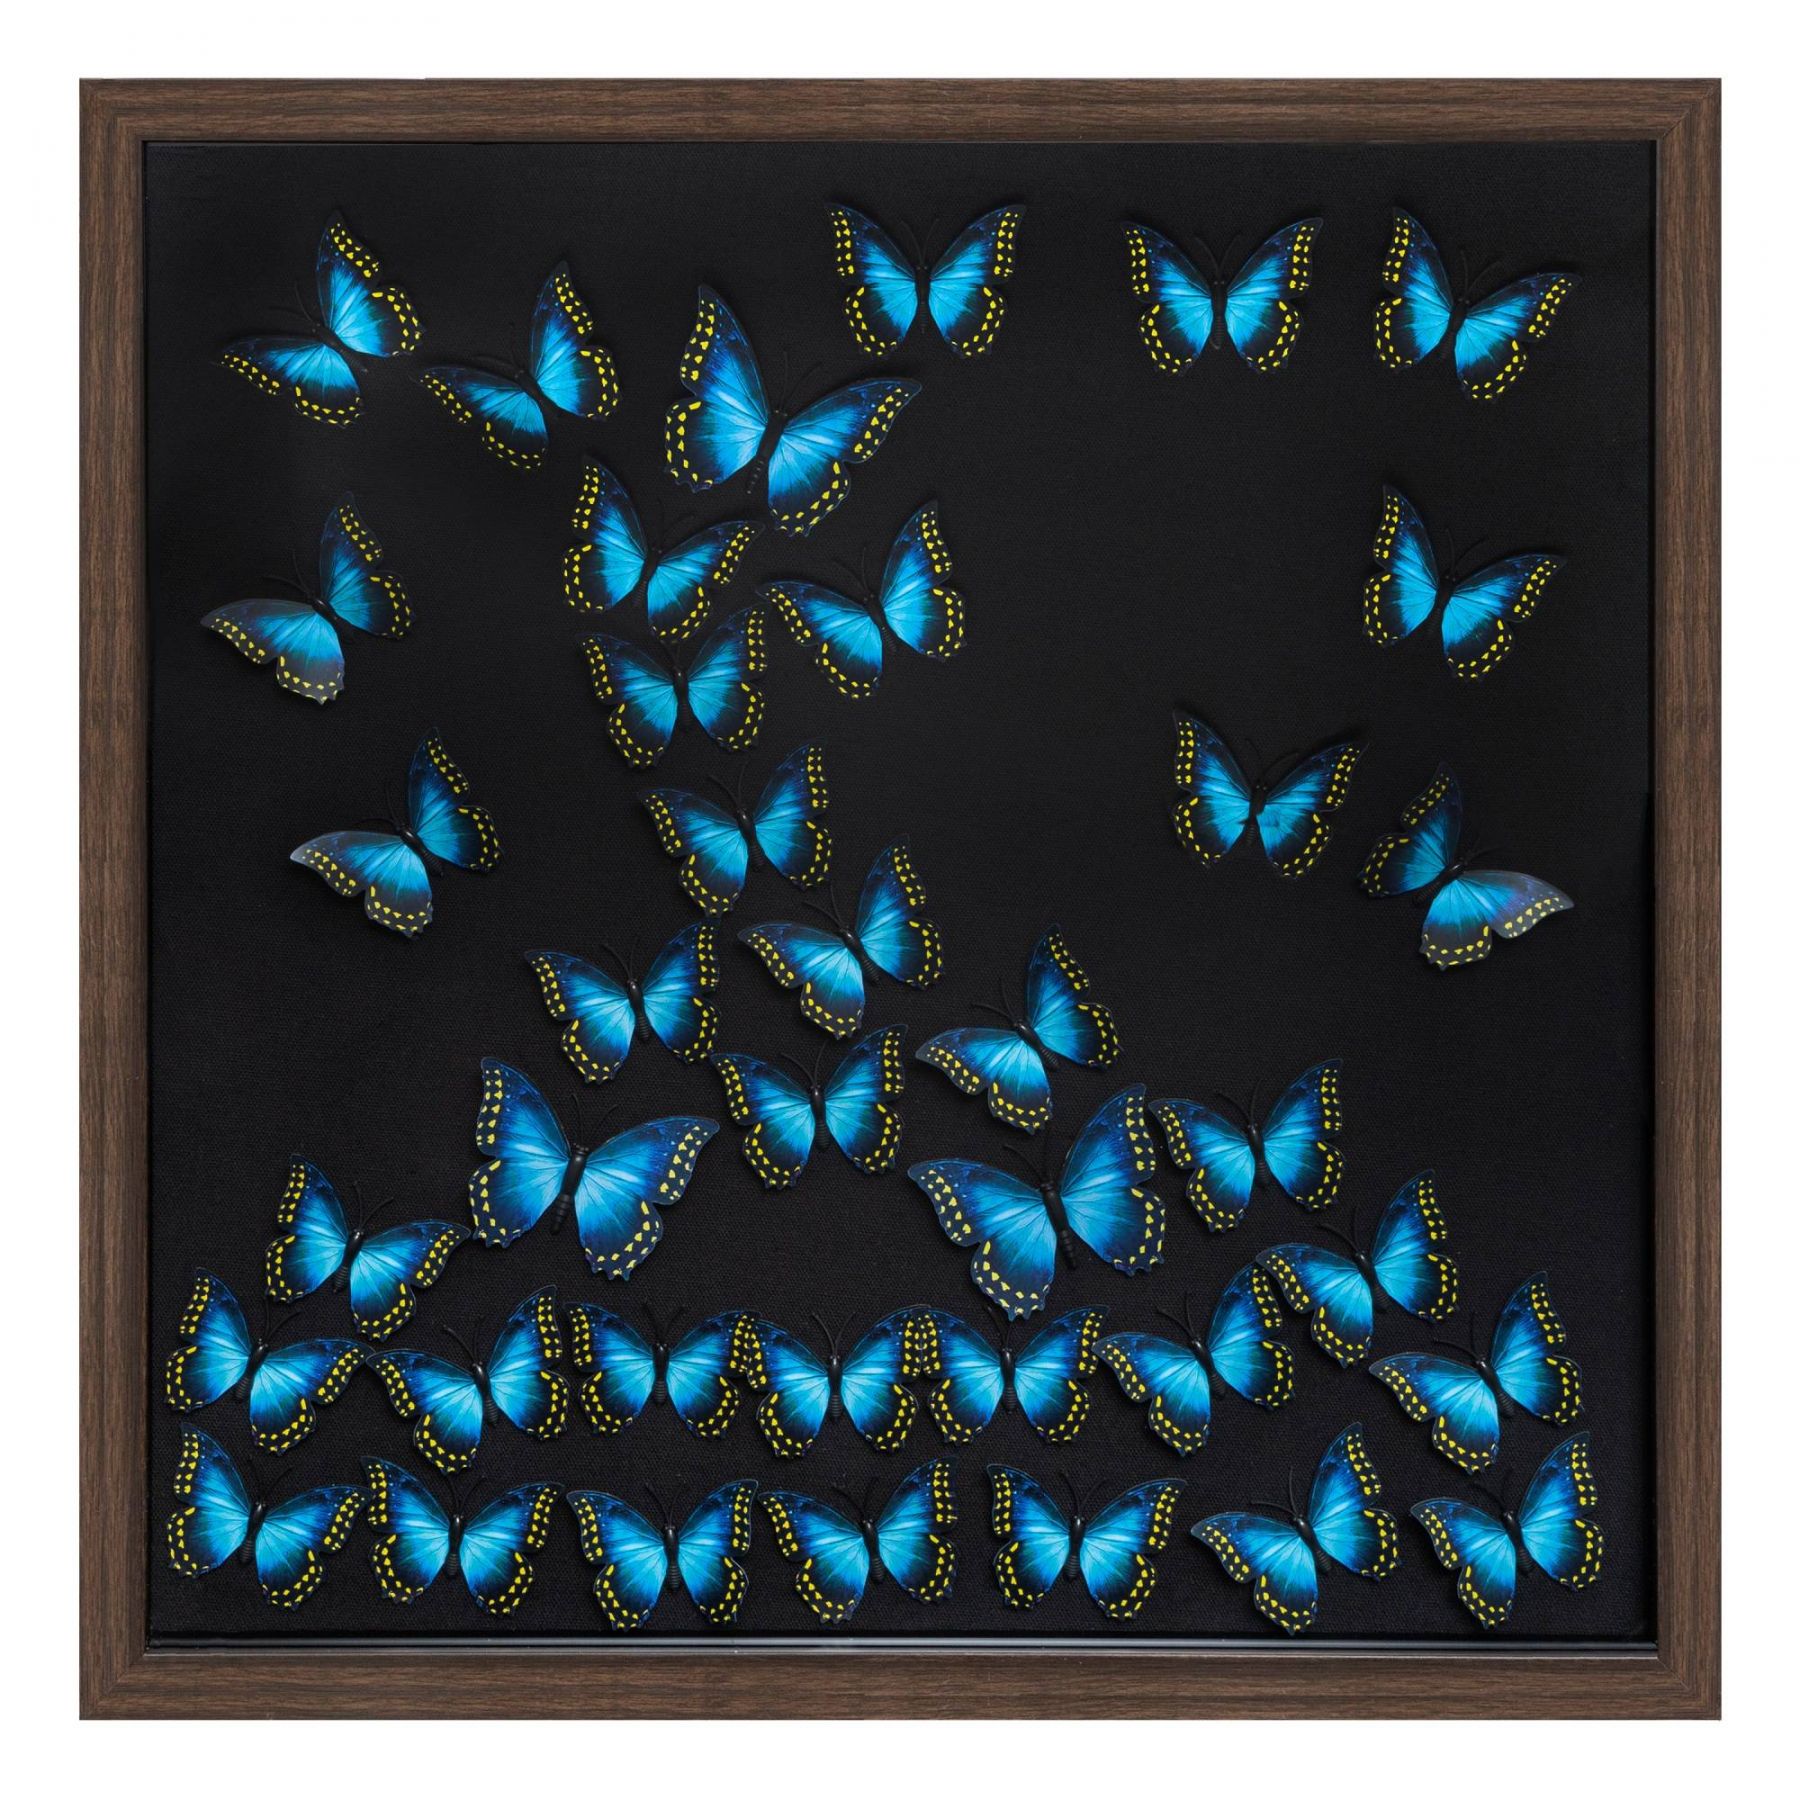 Atmosphera Nástěnná dekorace 3D s motýly, 55 x 55 cm - EMAKO.CZ s.r.o.